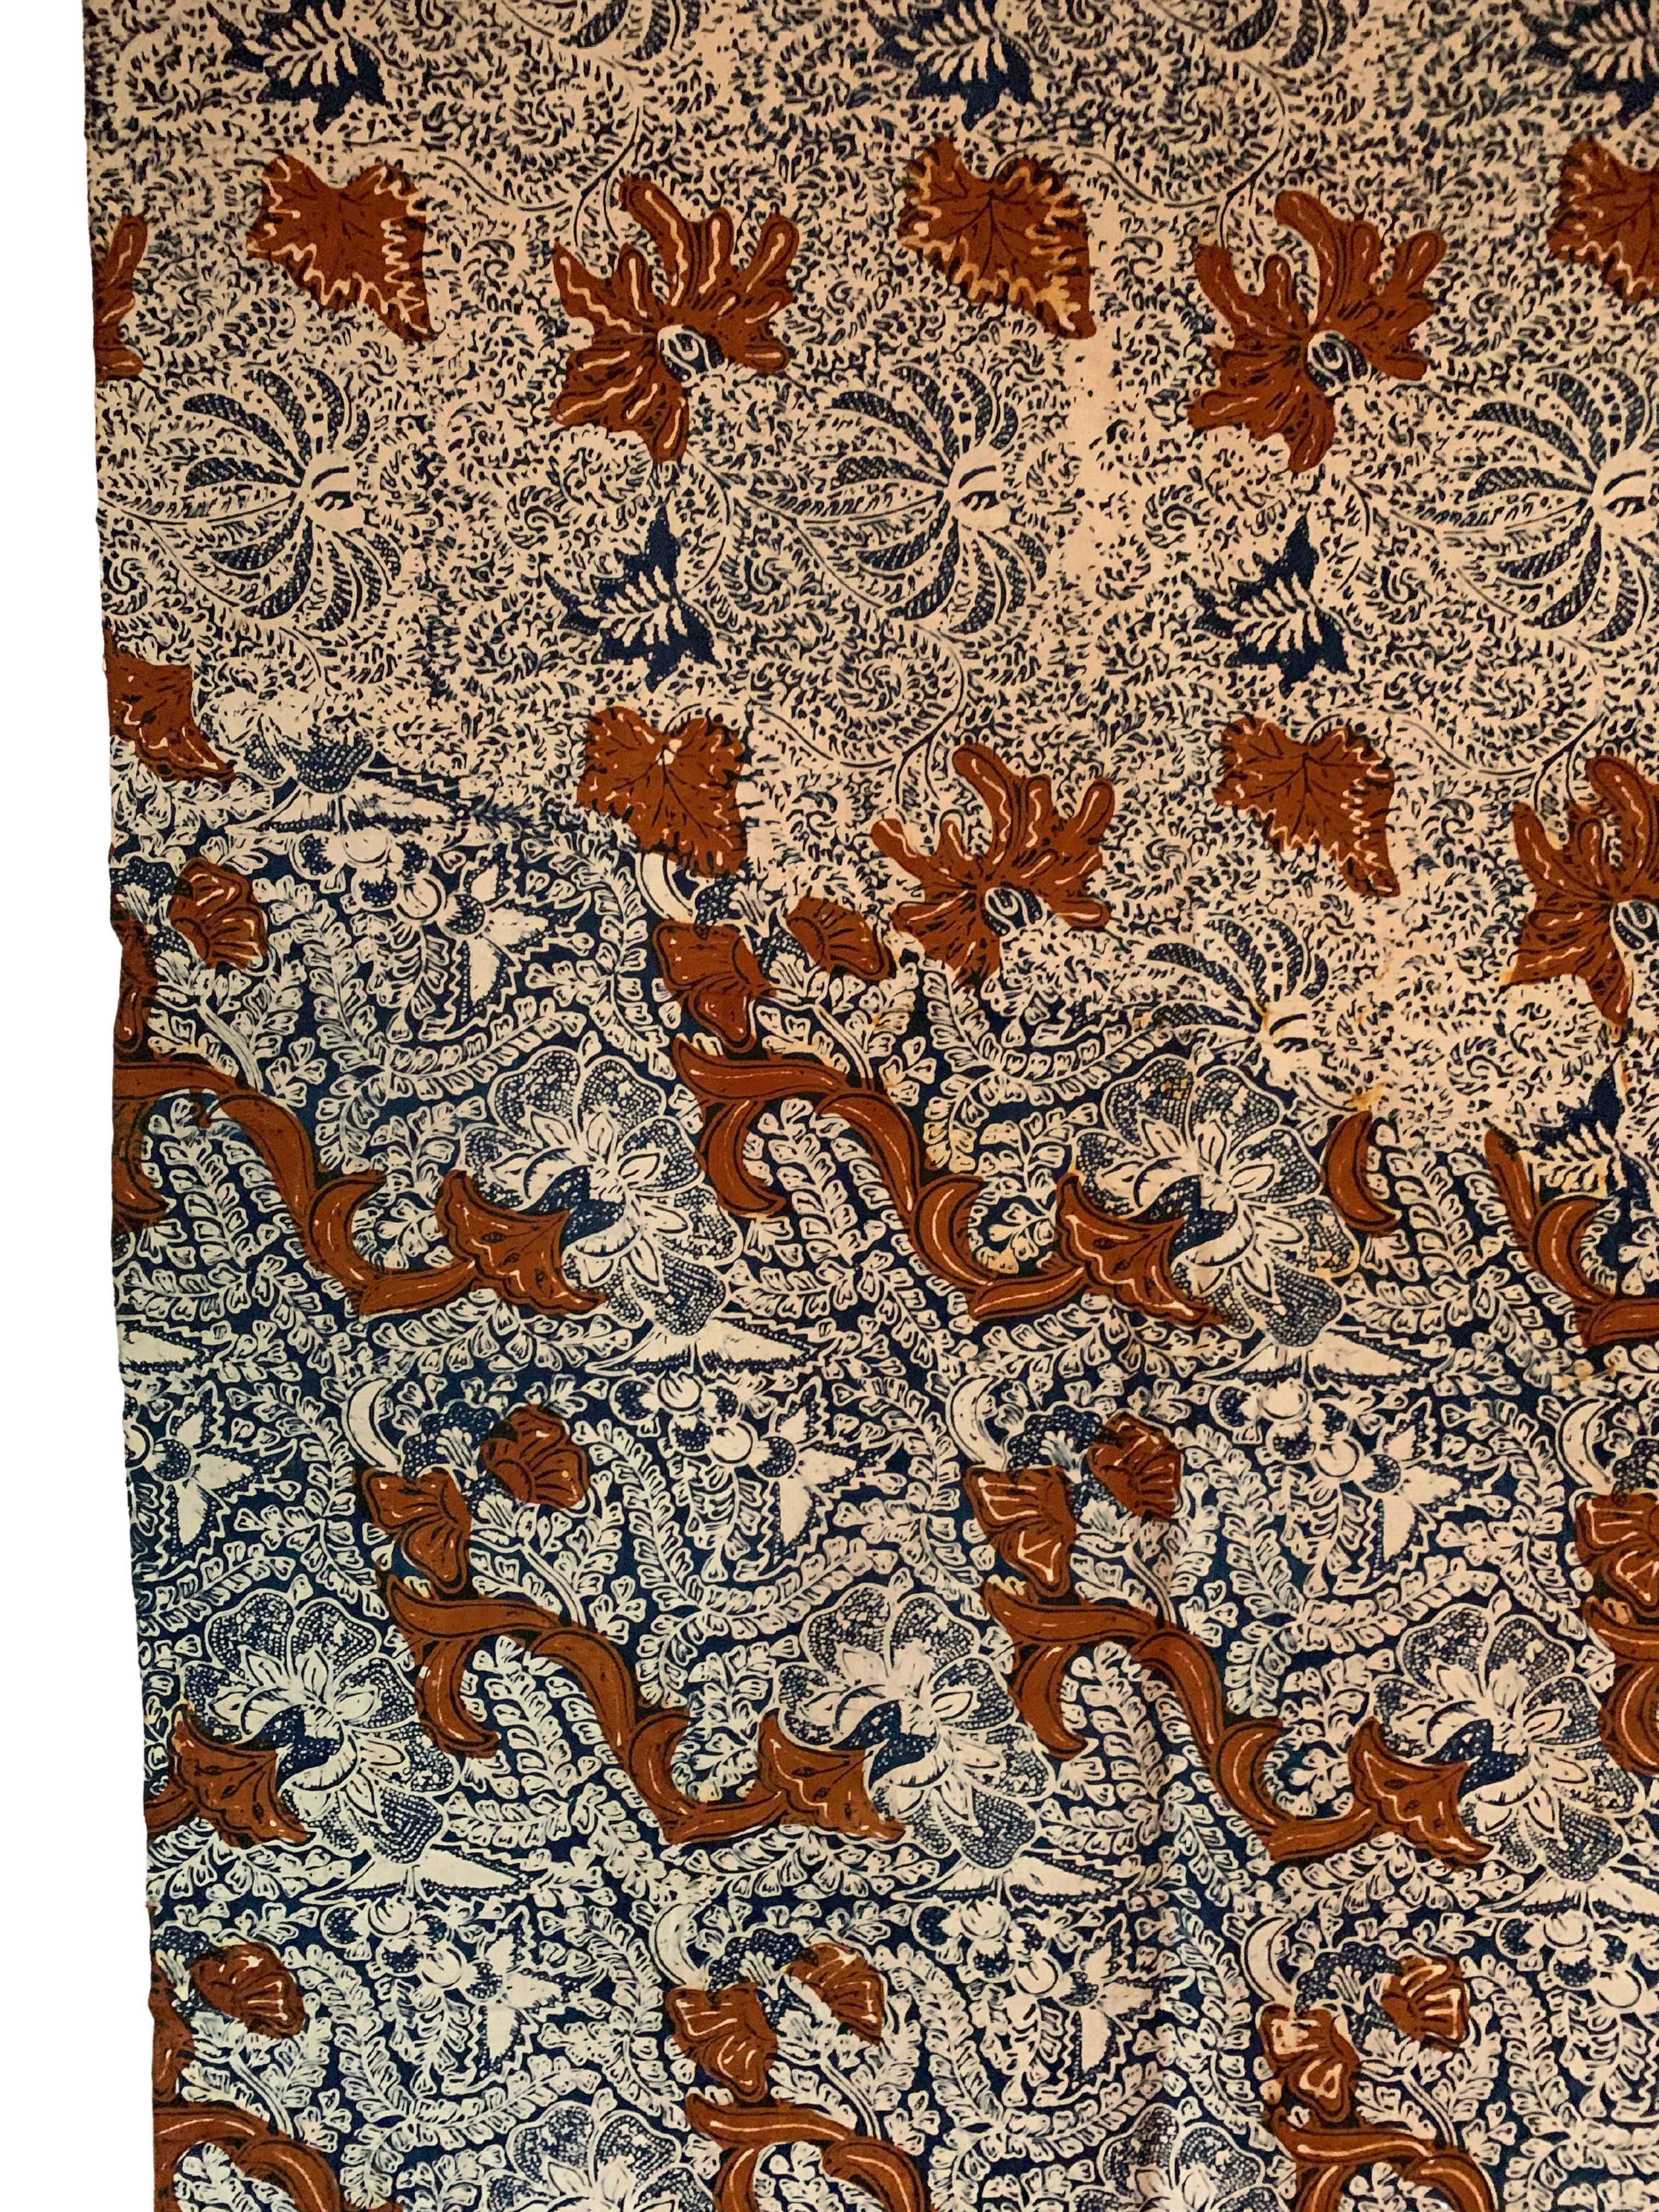 Un bel exemple de textile batik de Solo, Java, Indonésie. Ce textile présente de magnifiques détails et contrastes. Il présente un magnifique éventail de motifs floraux. 

